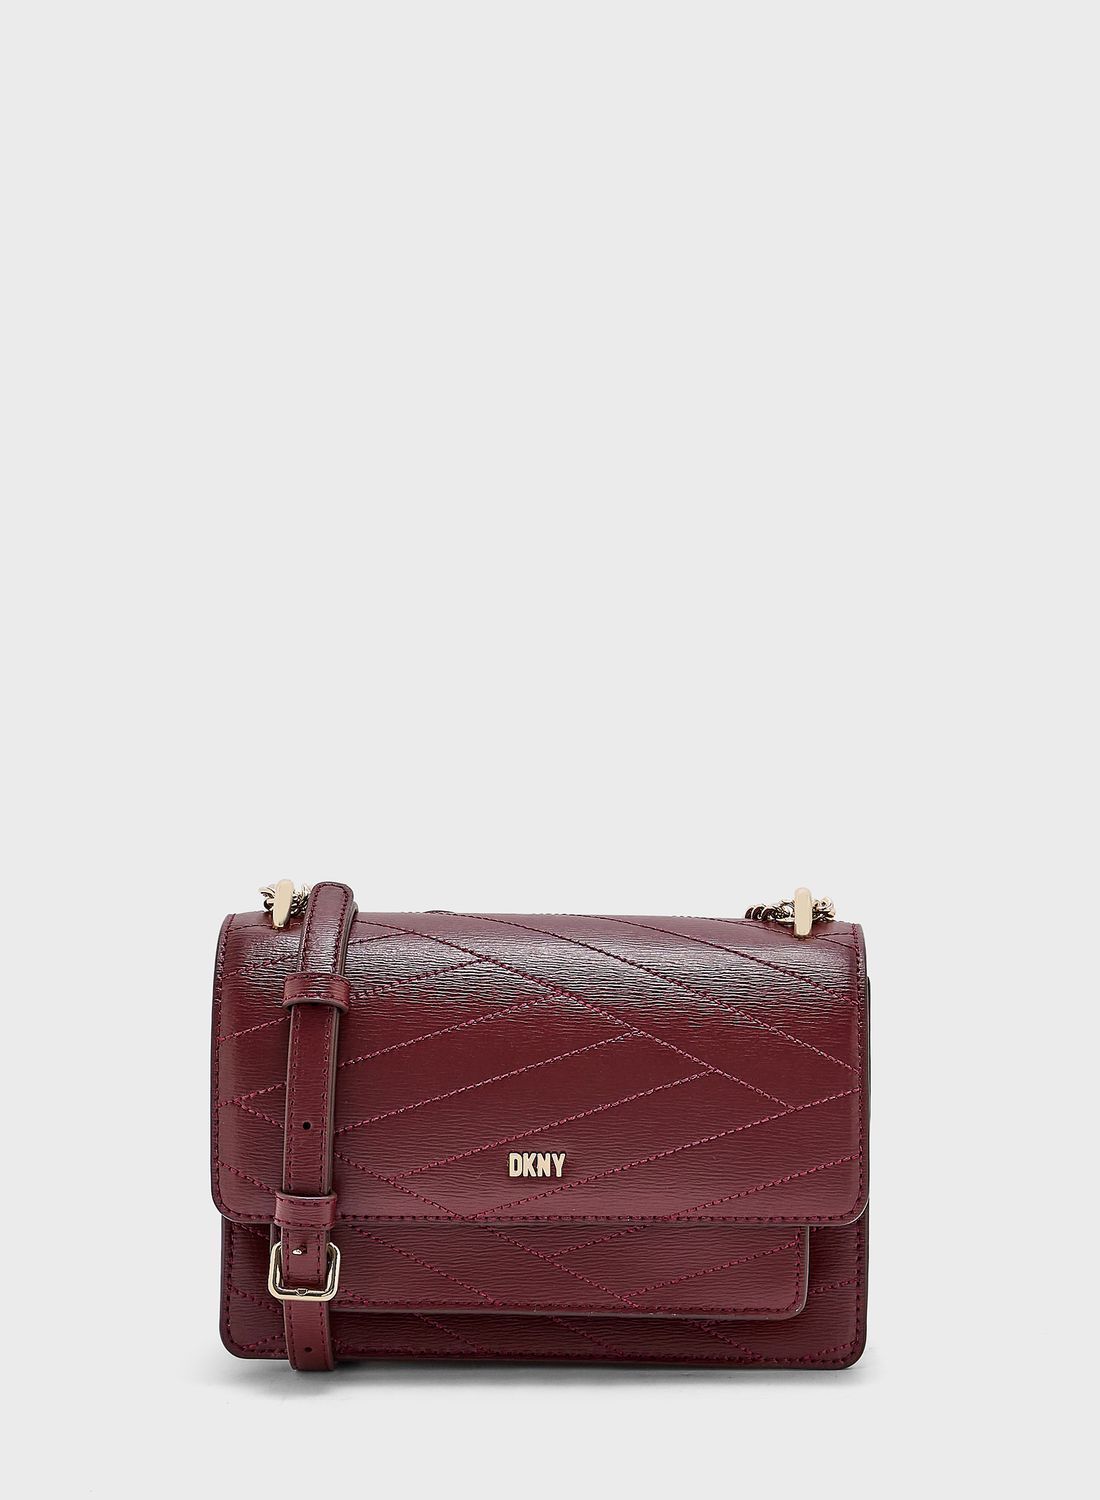 DKNY - Bryant Park Handbag